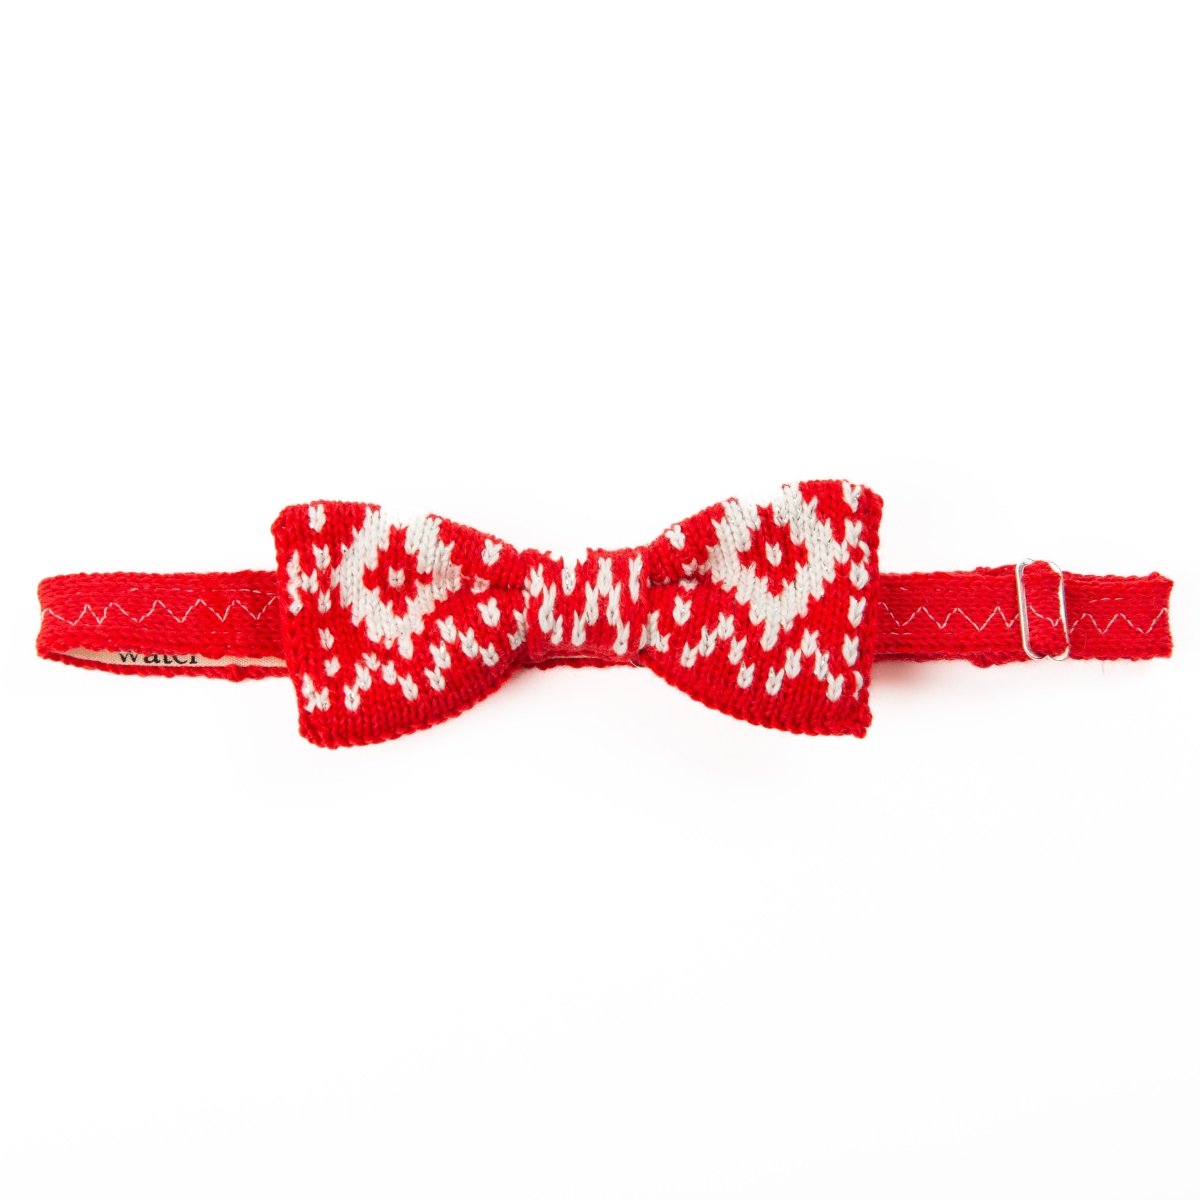 Festive Bow Tie: Hygge - Wool & Water